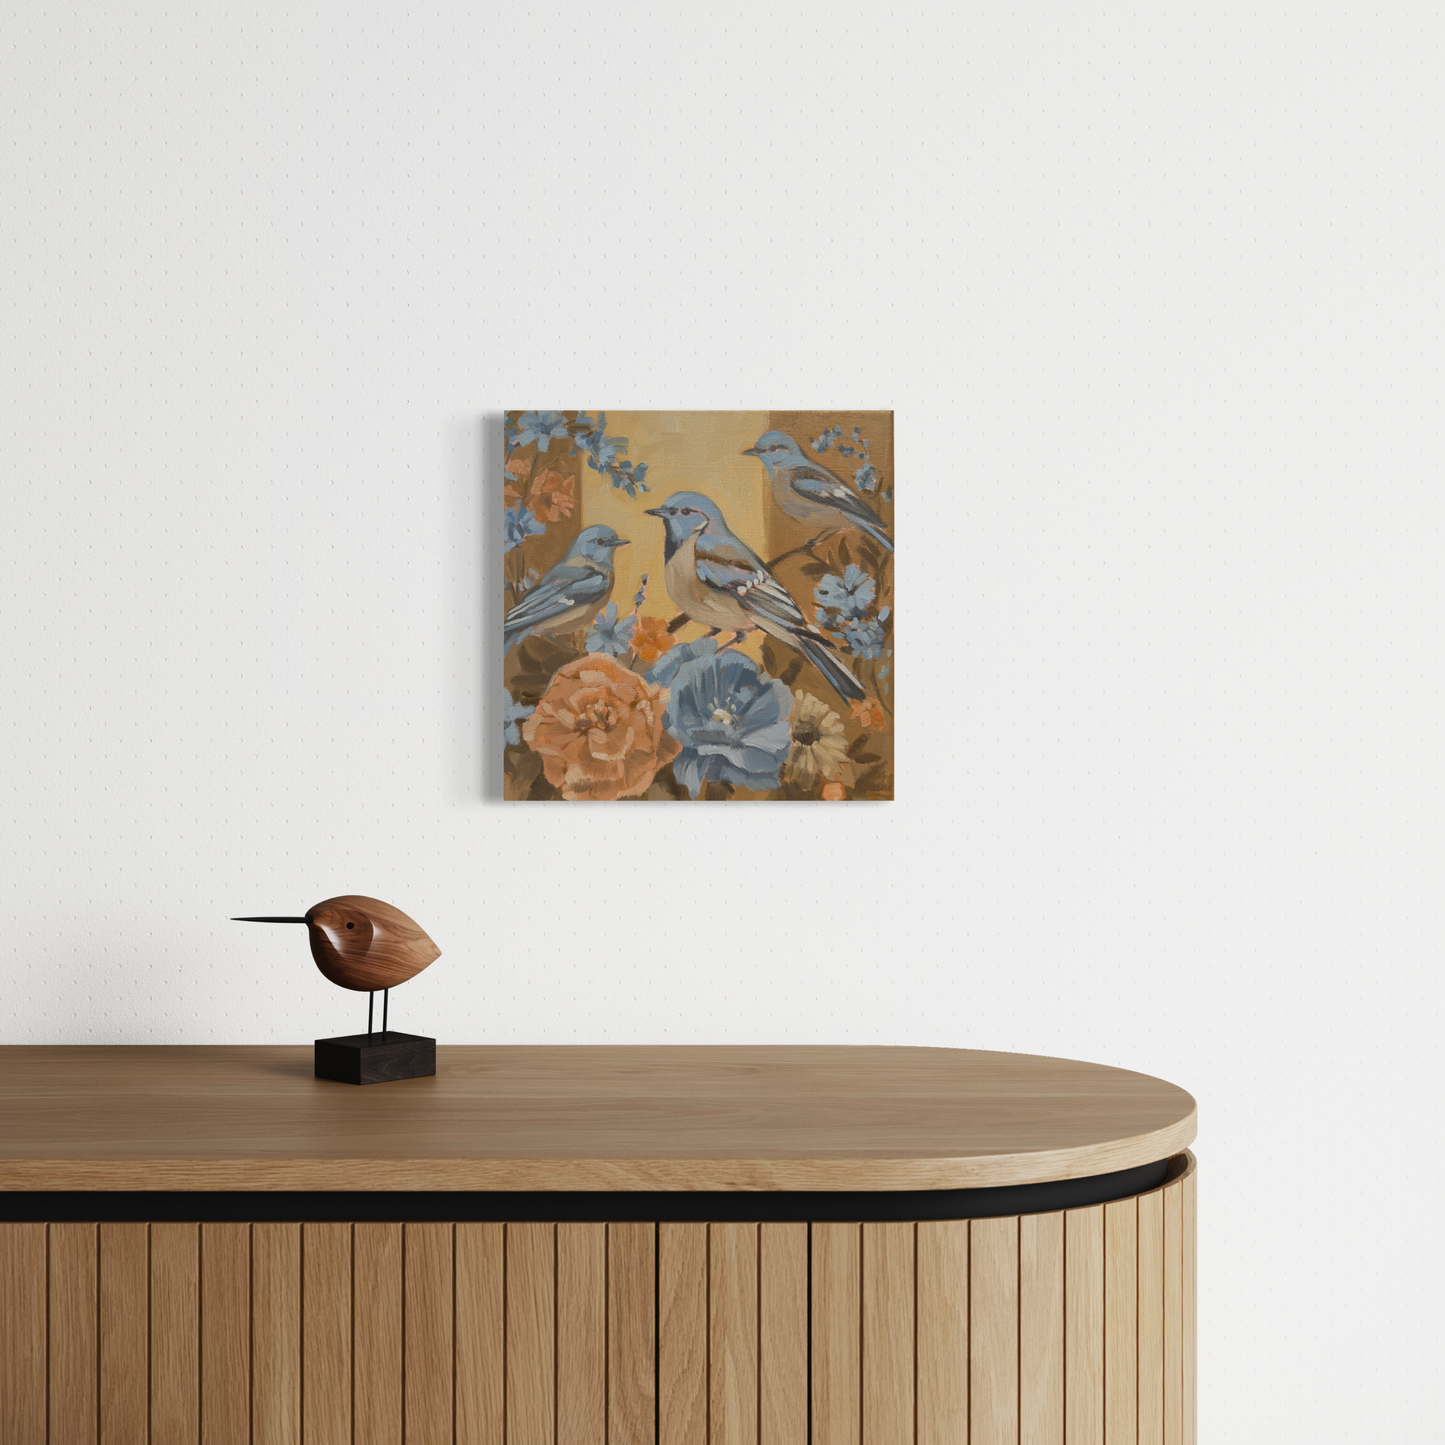 Flowers, Unikat, Ölgemälde auf Leinwand, handgemaltes Einzelstück, 30 x 30 cm